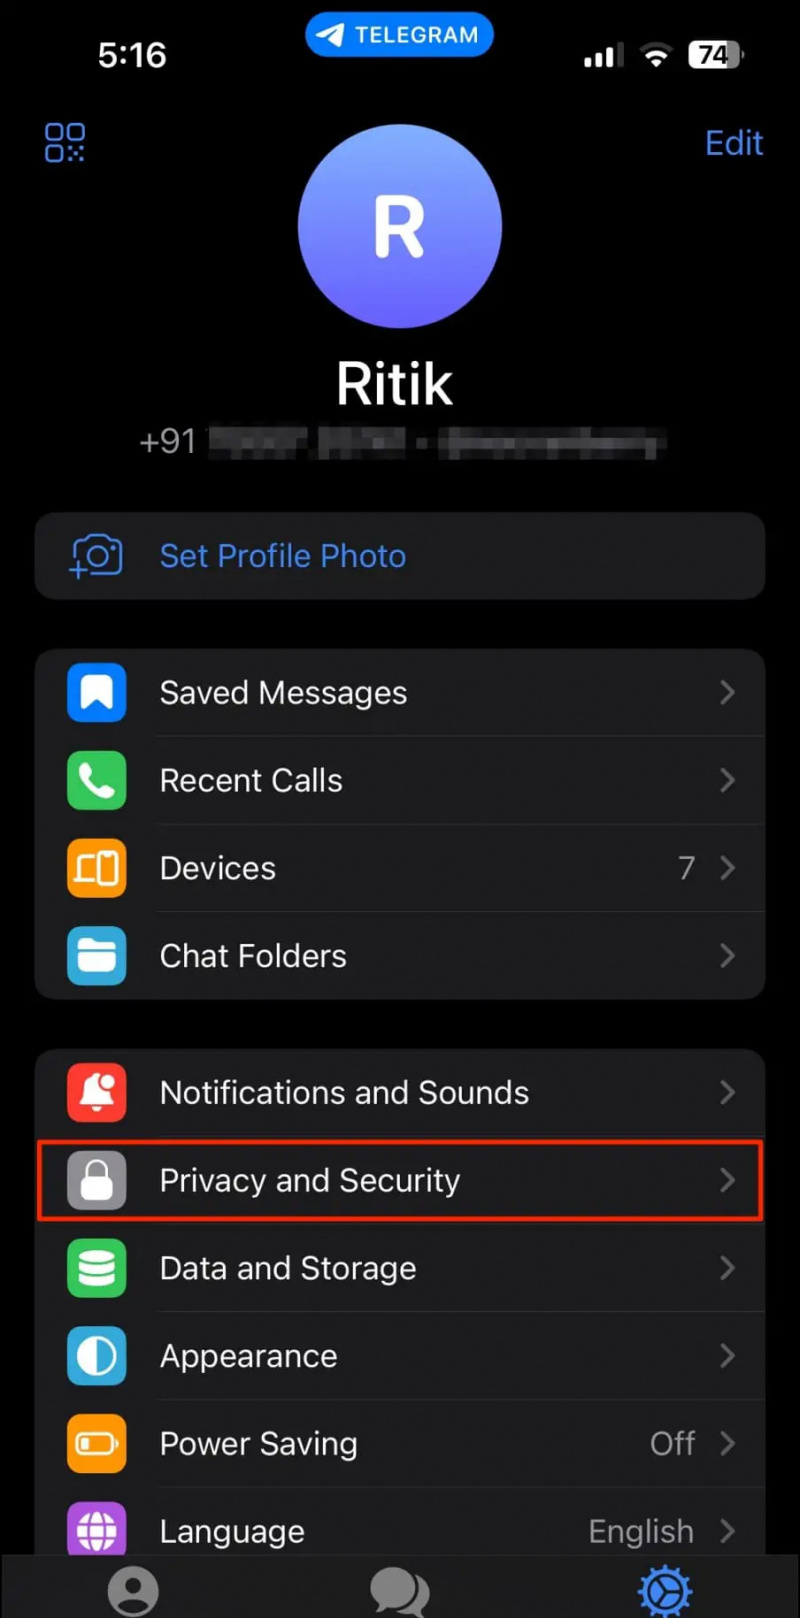   iPhone'da Telegram Uygulamasını Kilitle